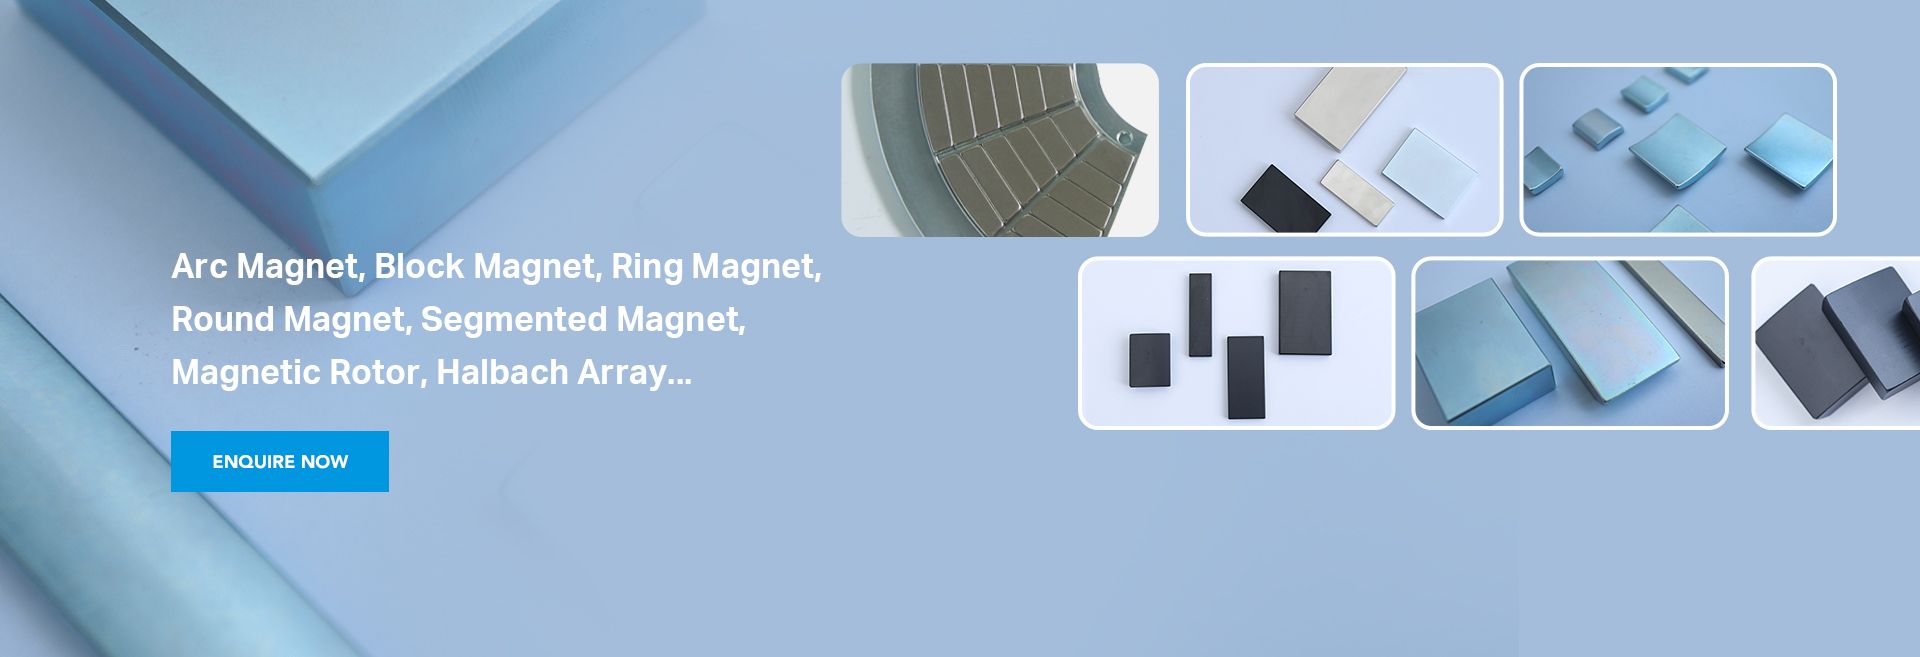 Standard Neodymium Magnets